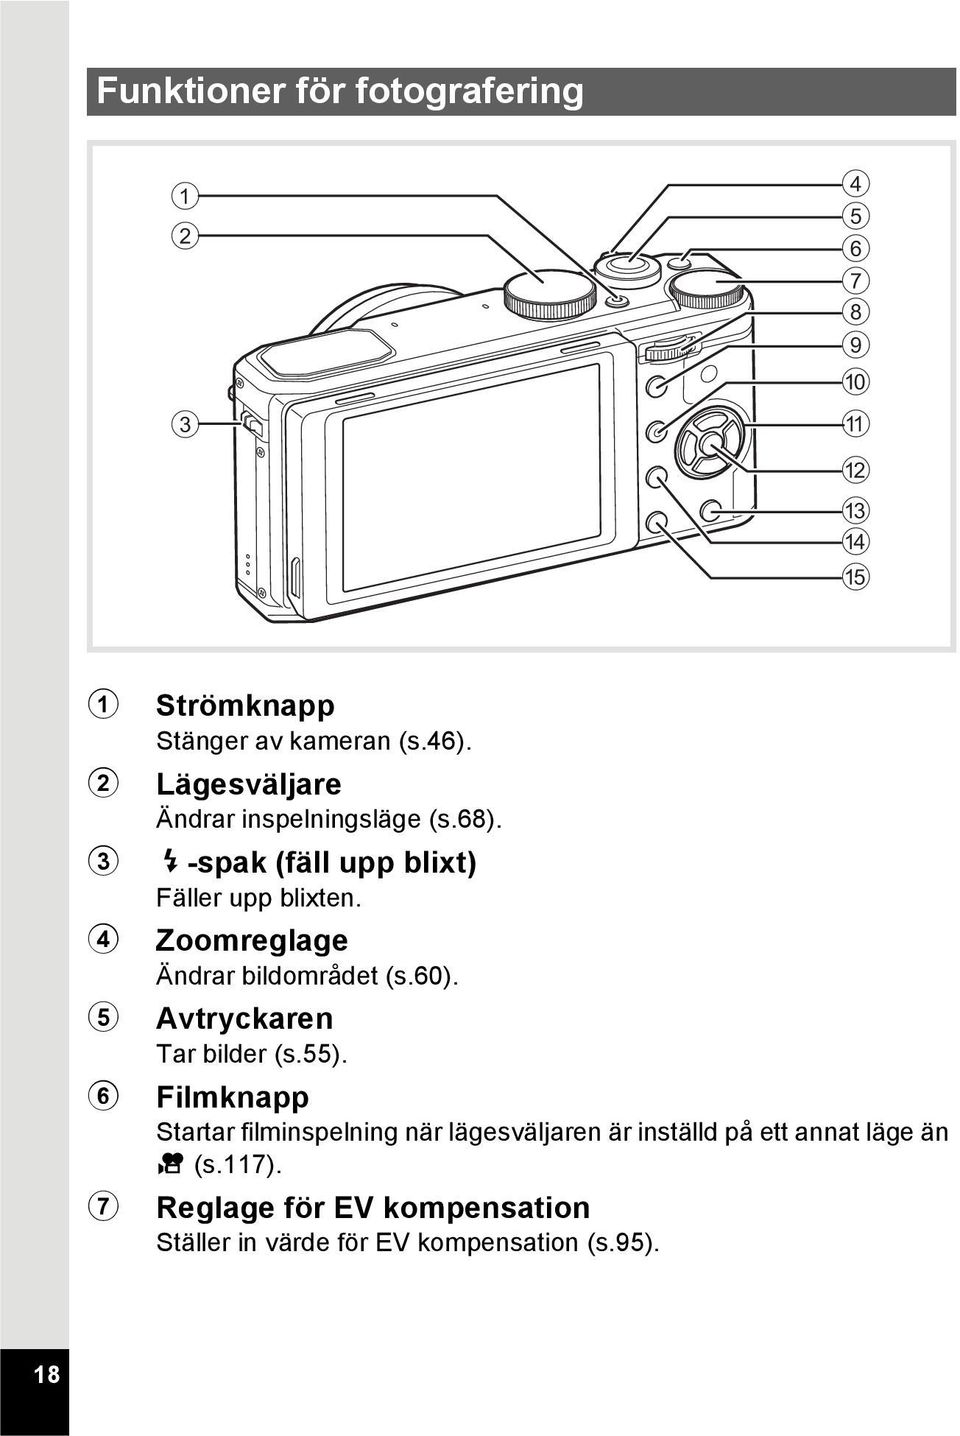 4 Zoomreglage Ändrar bildområdet (s.60). 5 Avtryckaren Tar bilder (s.55).